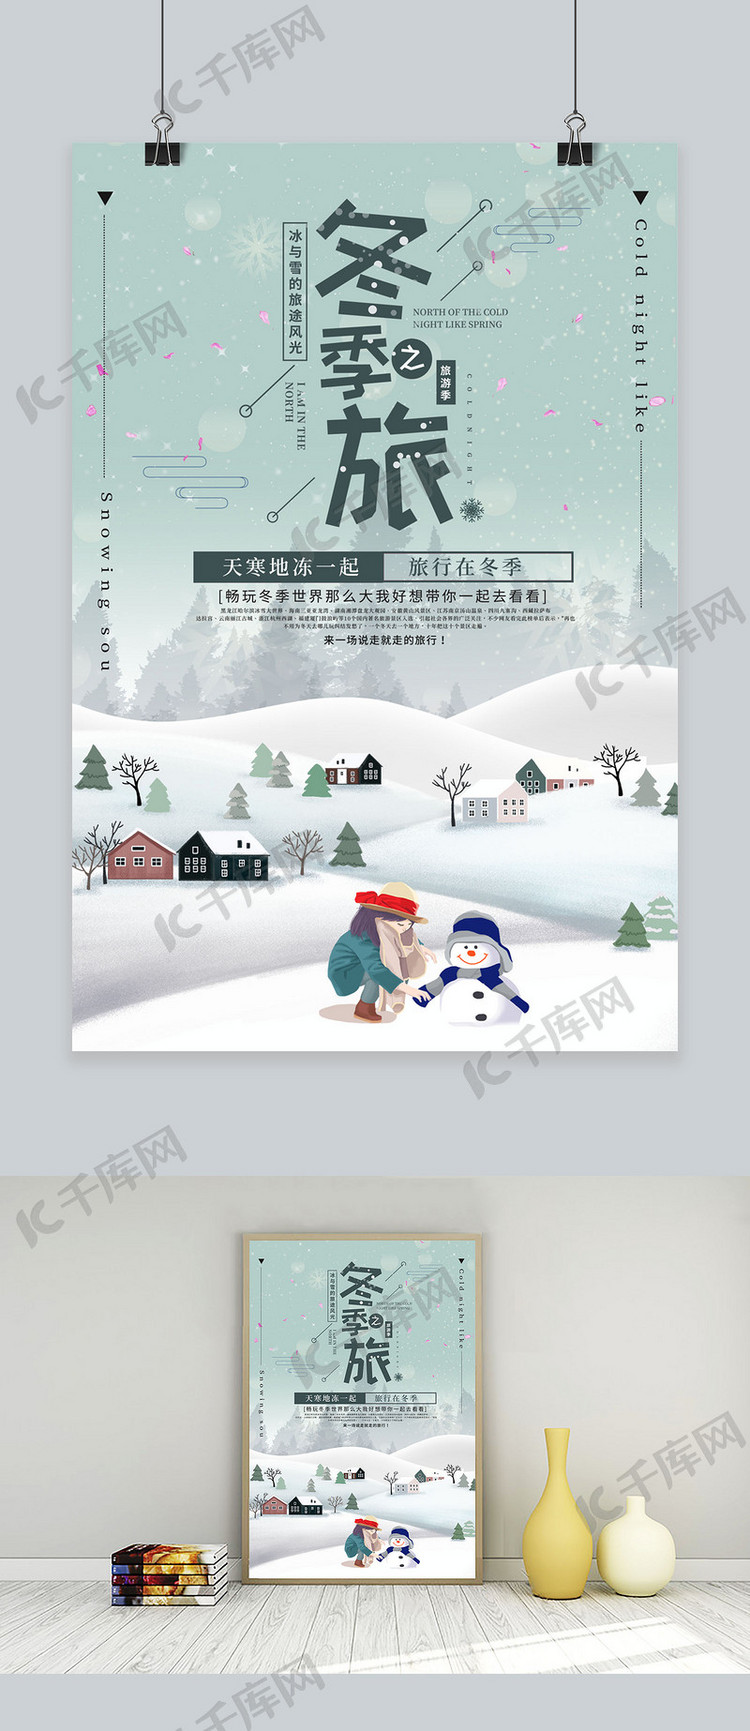 千库原创冬季旅游创意宣传海报